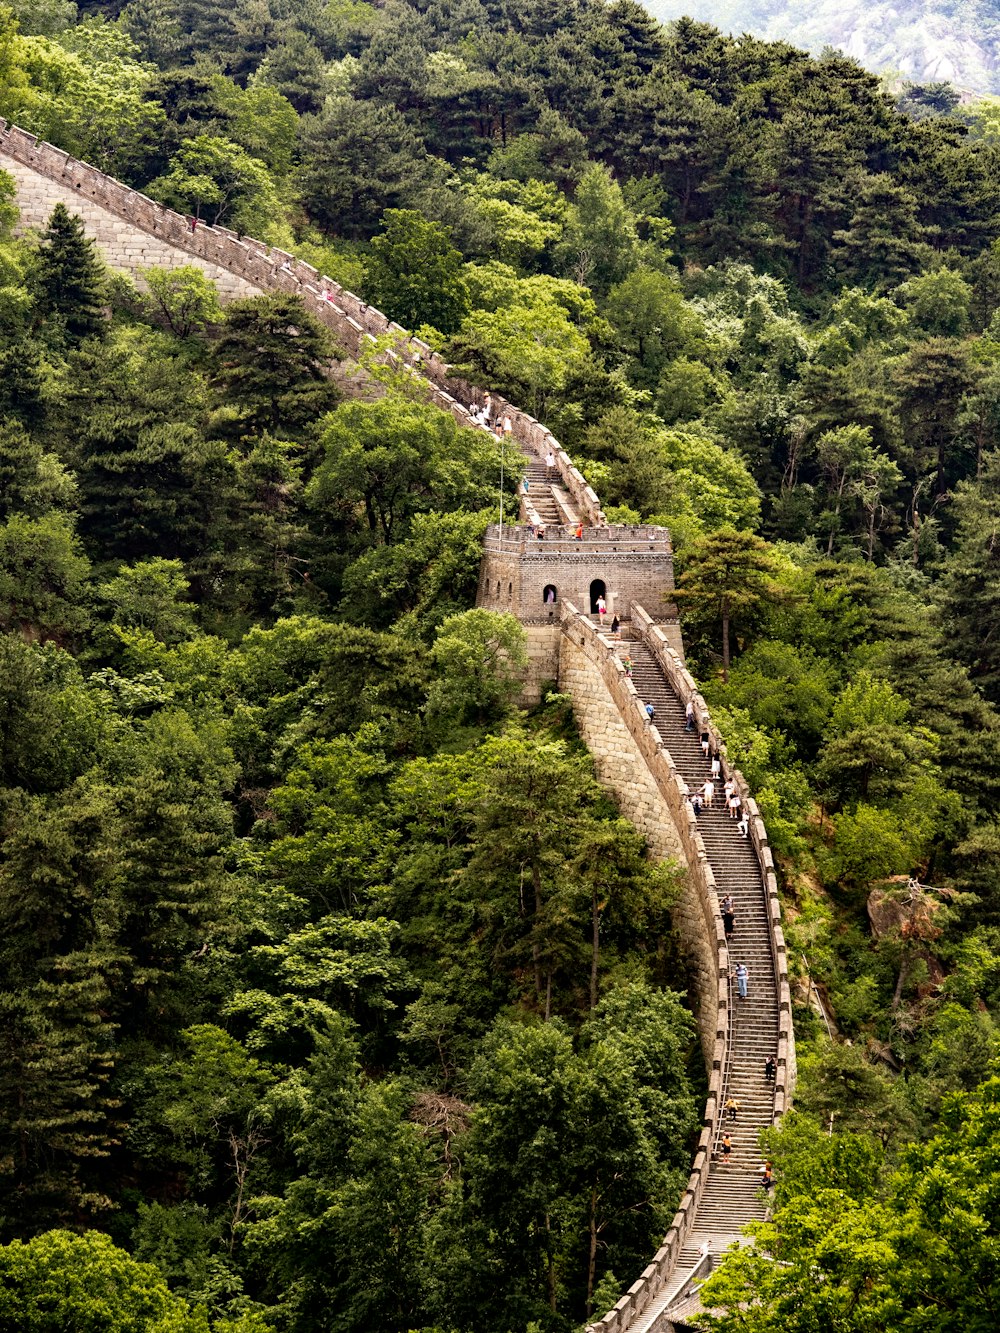 La Grande Muraglia Cinese